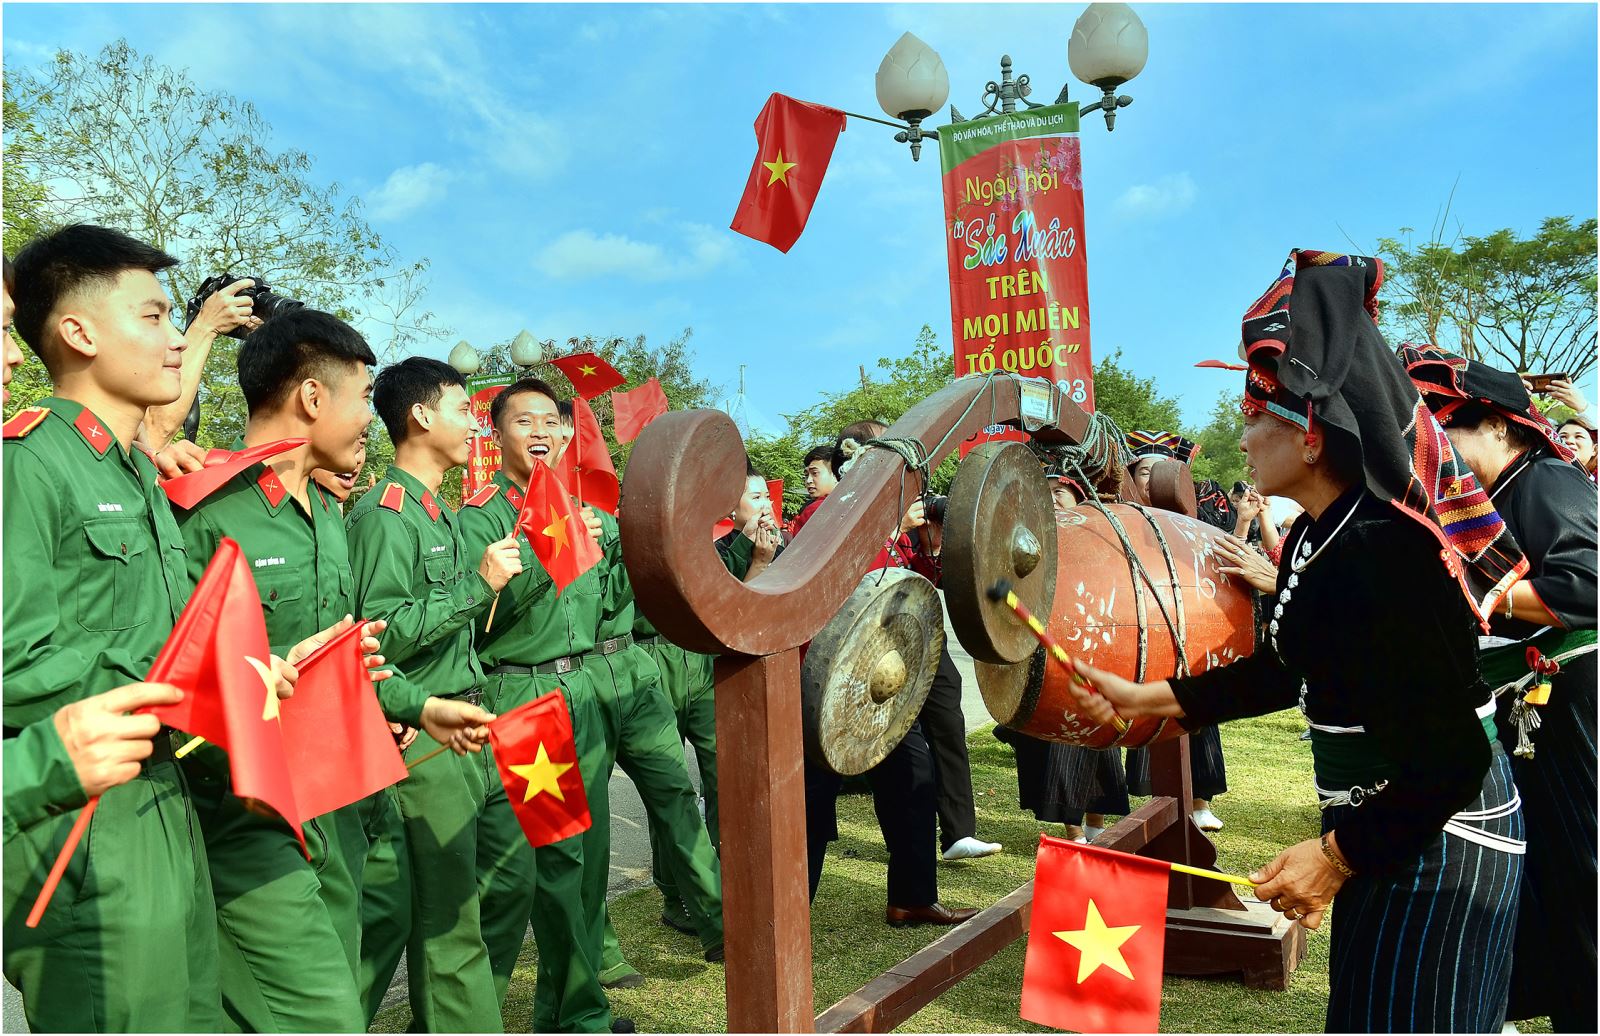 “Đề cương về văn hóa Việt Nam” là văn kiện có tính cương lĩnh về văn hóa, văn nghệ của Đảng, được công bố khi nước nhà chưa được độc lập, dân ta chưa được tự do; sự kiện này khẳng định sự phát triển tư duy chiến lược của Đảng về văn hóa cách mạng Việt Nam.